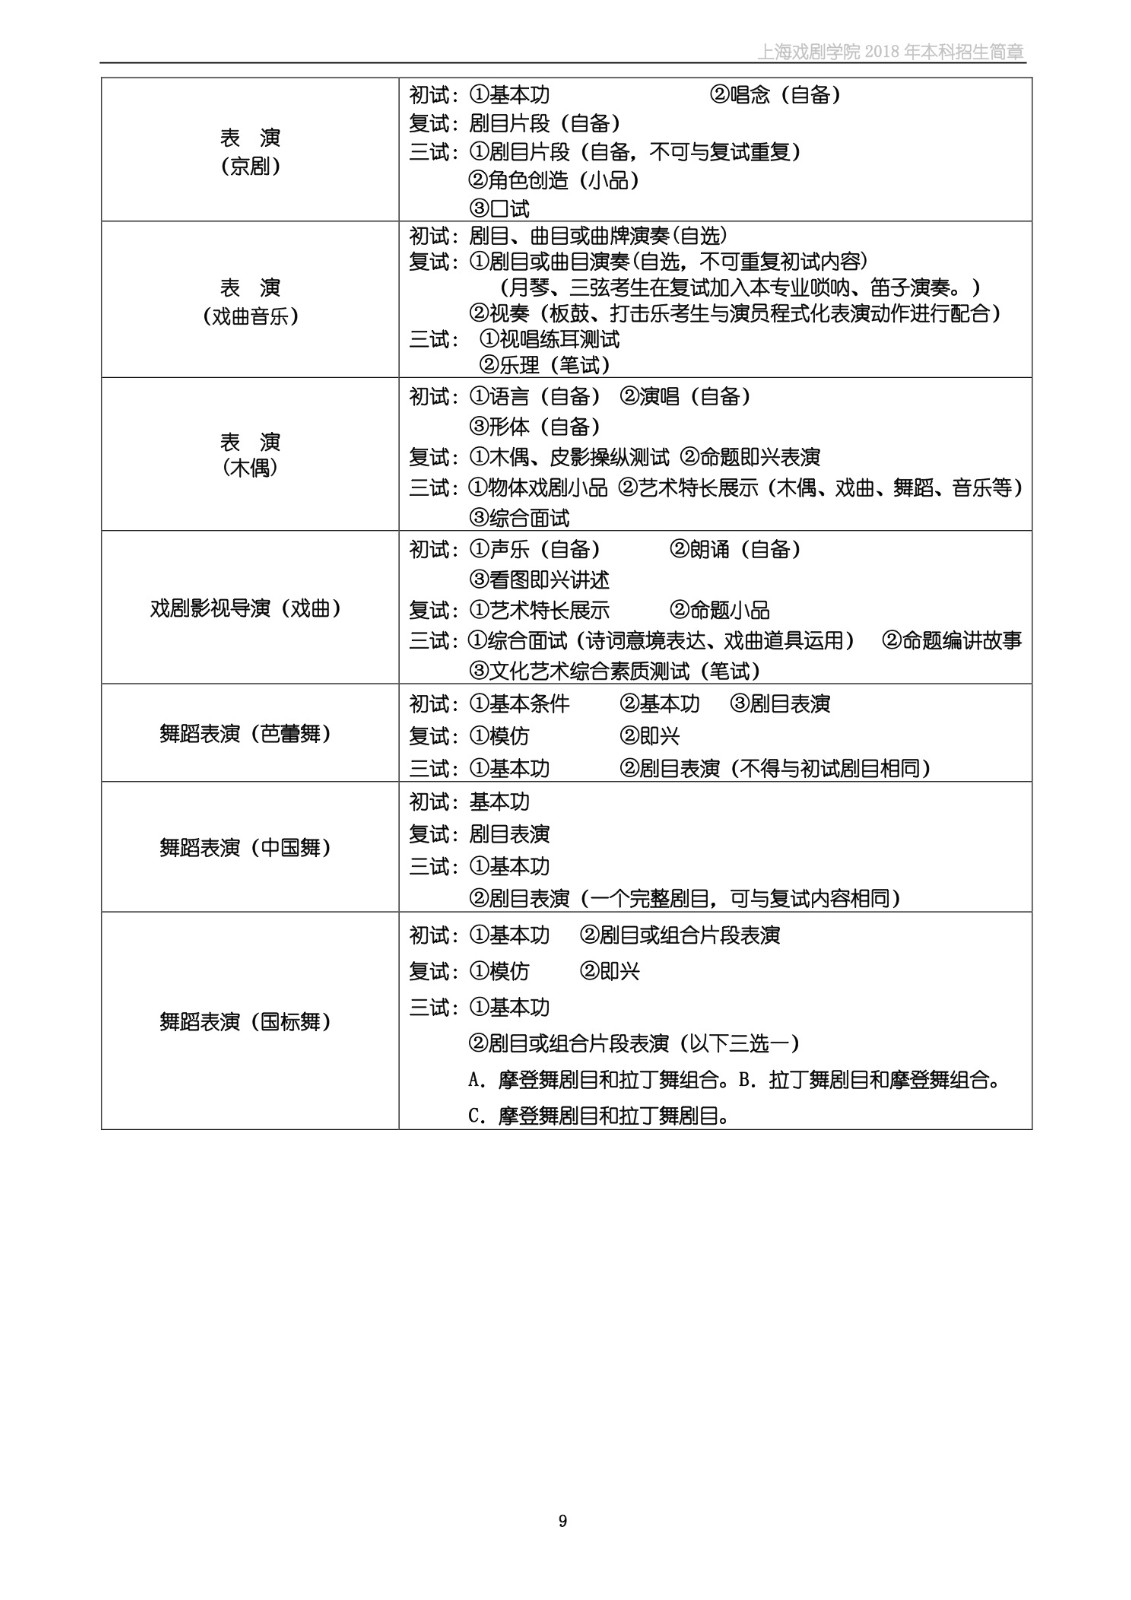 上海戏剧学院2018年本科招生简章-page9.jpeg